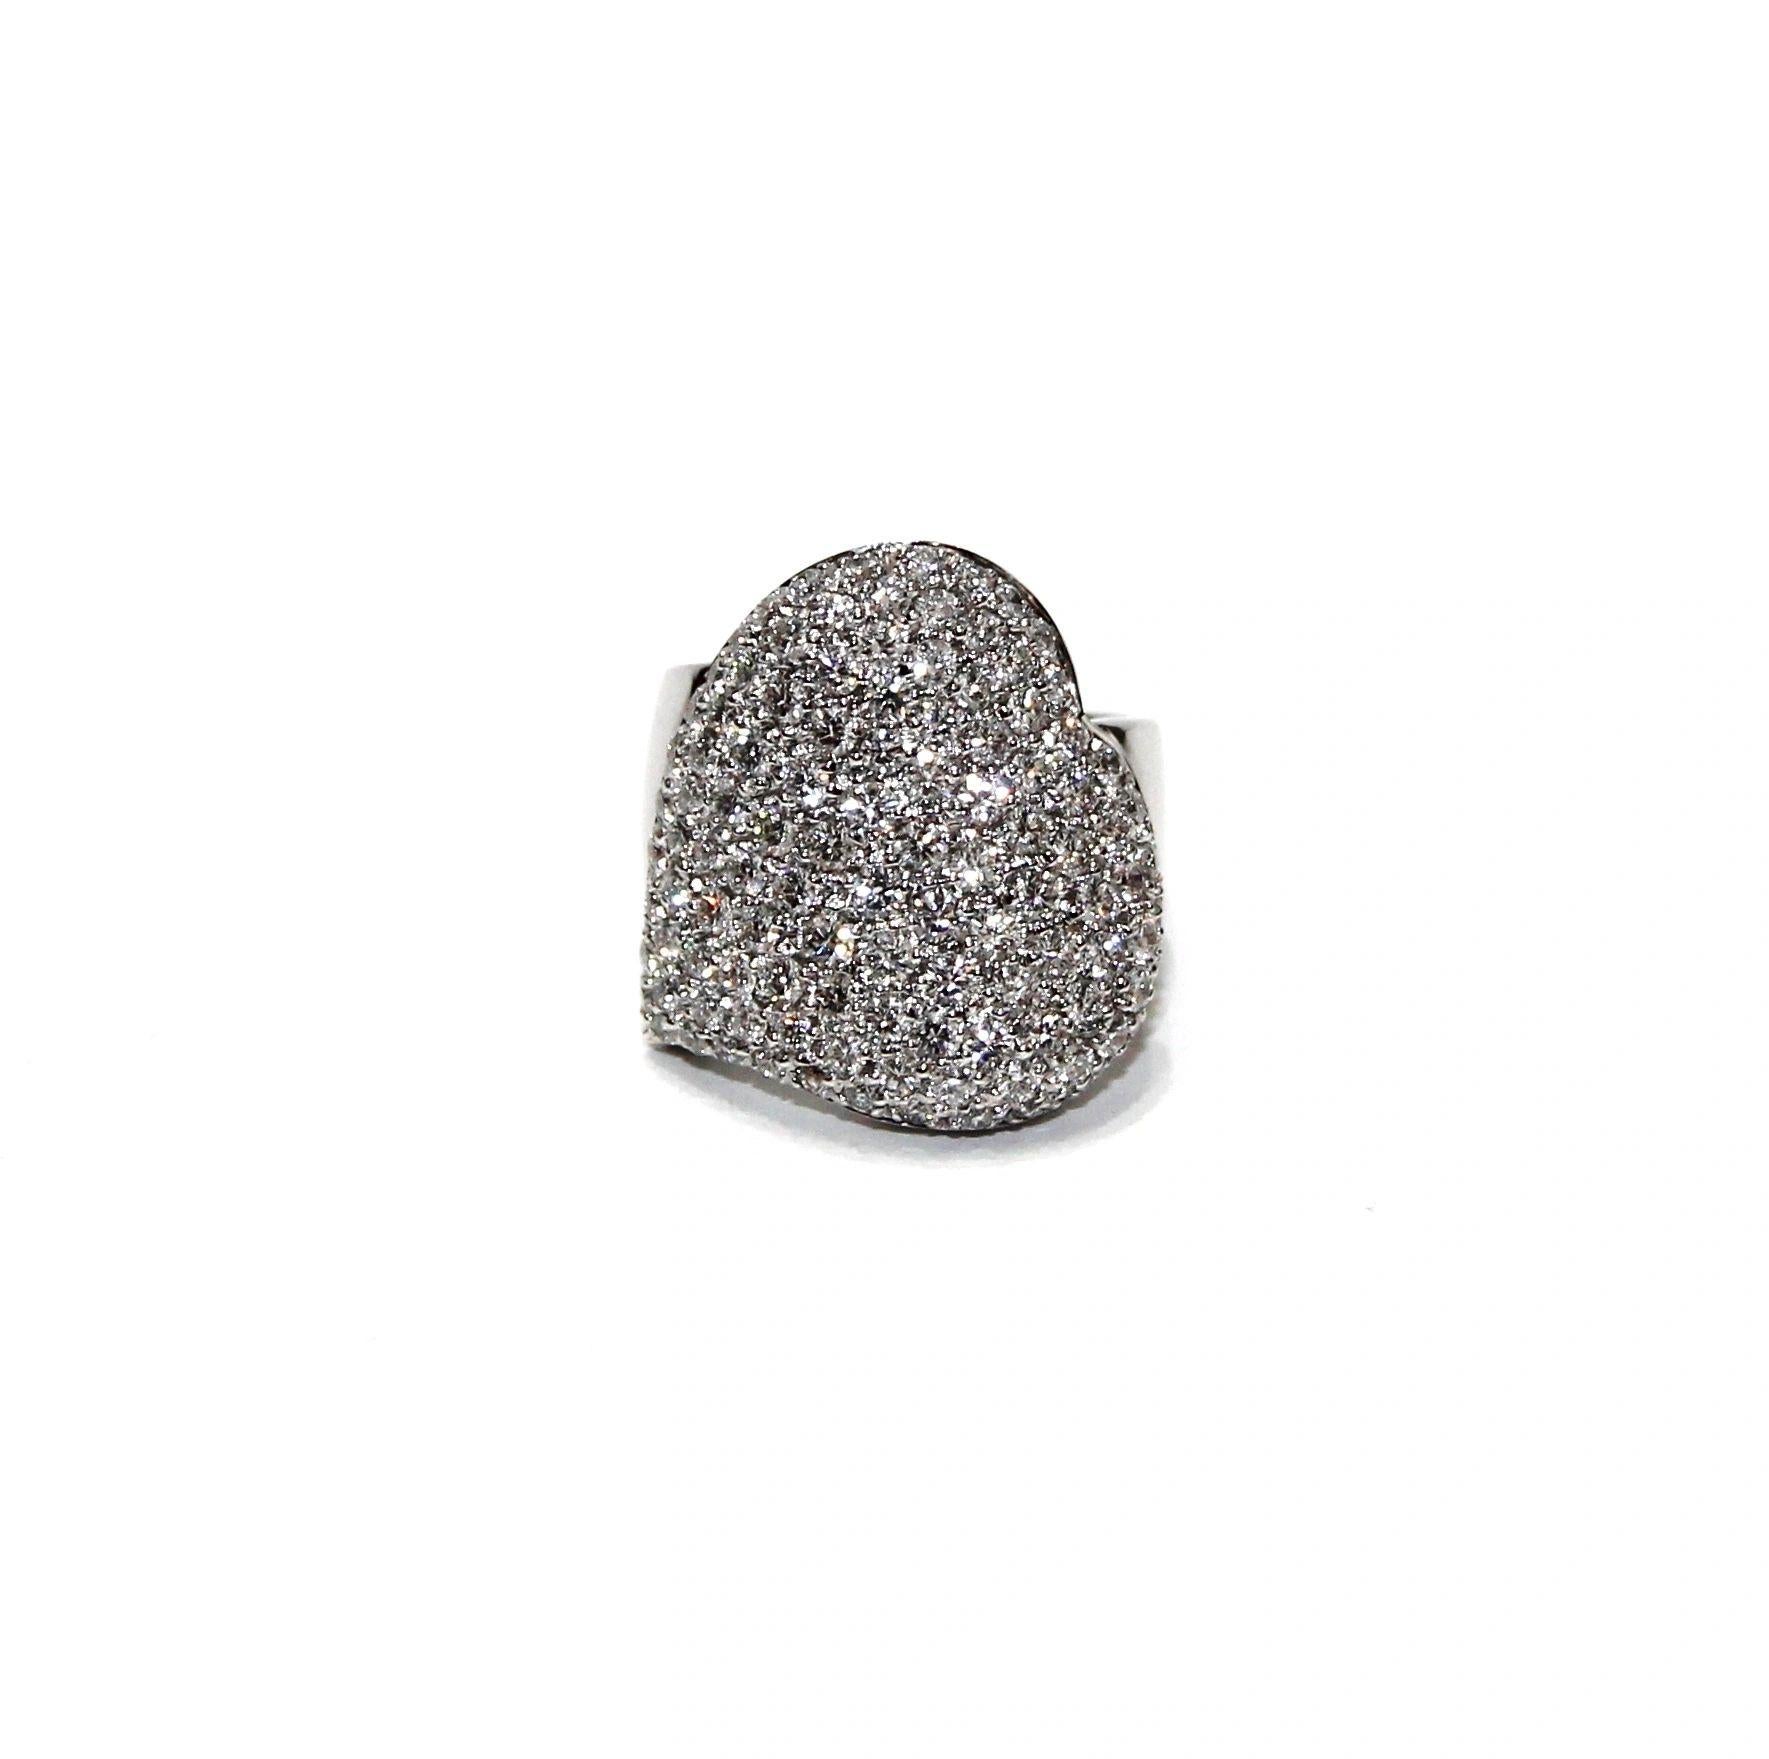 Leo Pizzo Bague à diamants en forme de cœur, or blanc 18 carats
Diamant : 2.71ctw
Couleur : G-H
Clarté : VS1/VS2
Taille de l'anneau : 6.5
SKU : LPO01413
Prix de vente au détail : 14 010,00